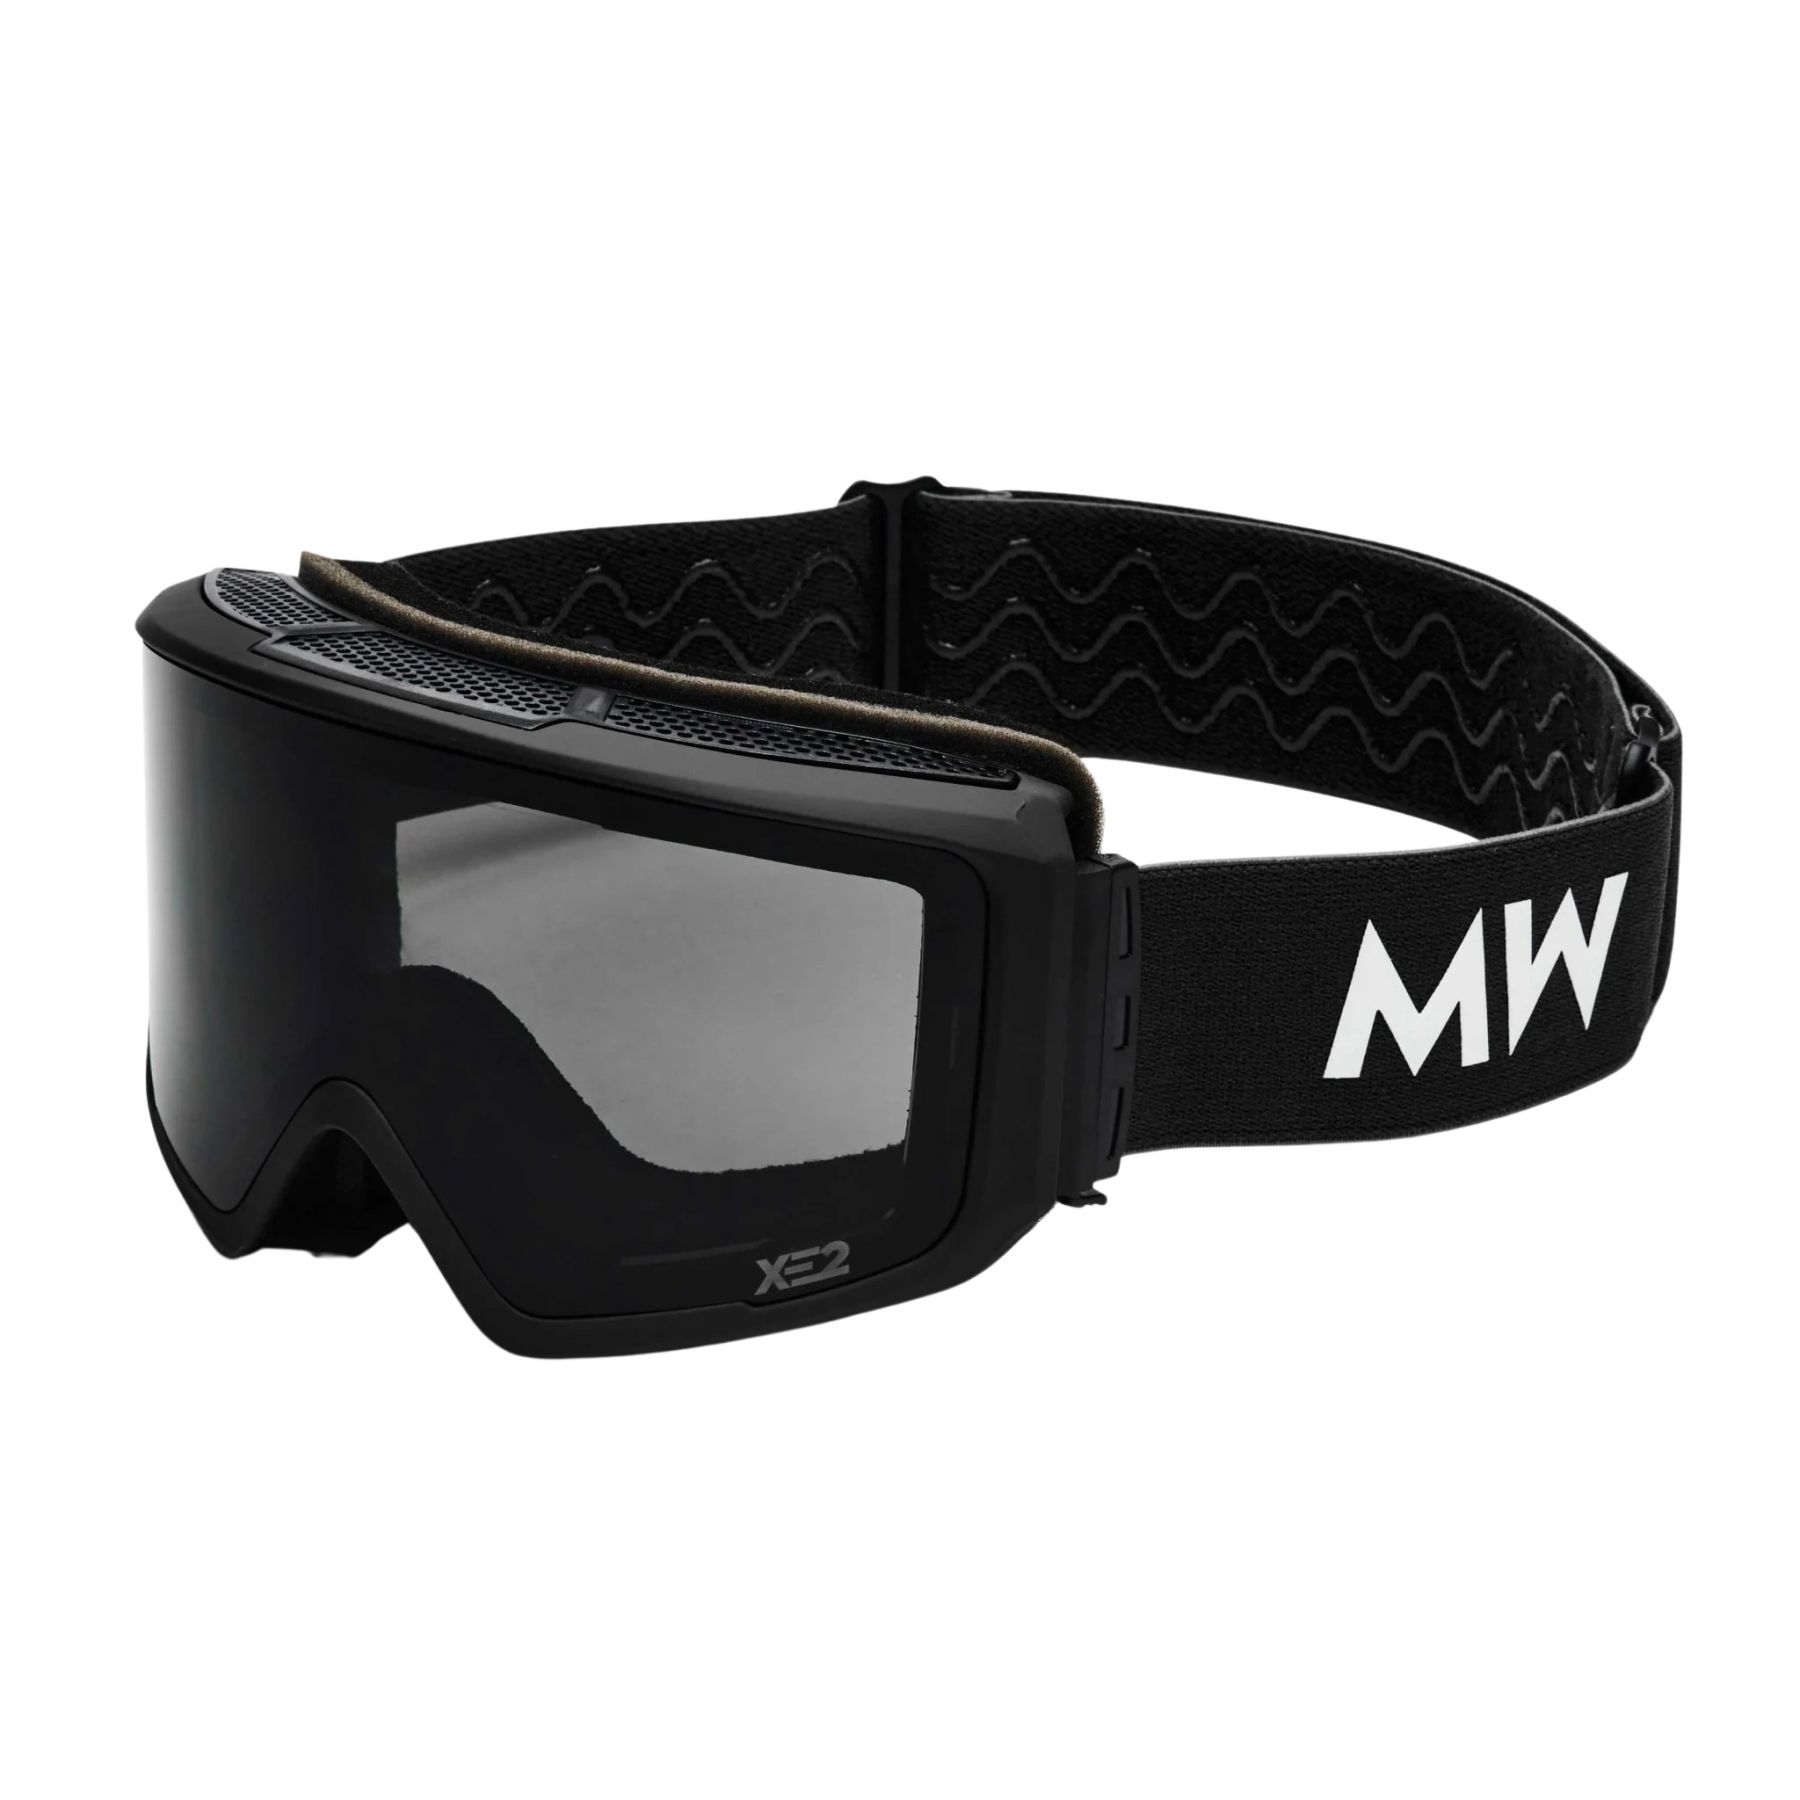 Brug MessyWeekend Flip XE2, skibriller, sort til en forbedret oplevelse